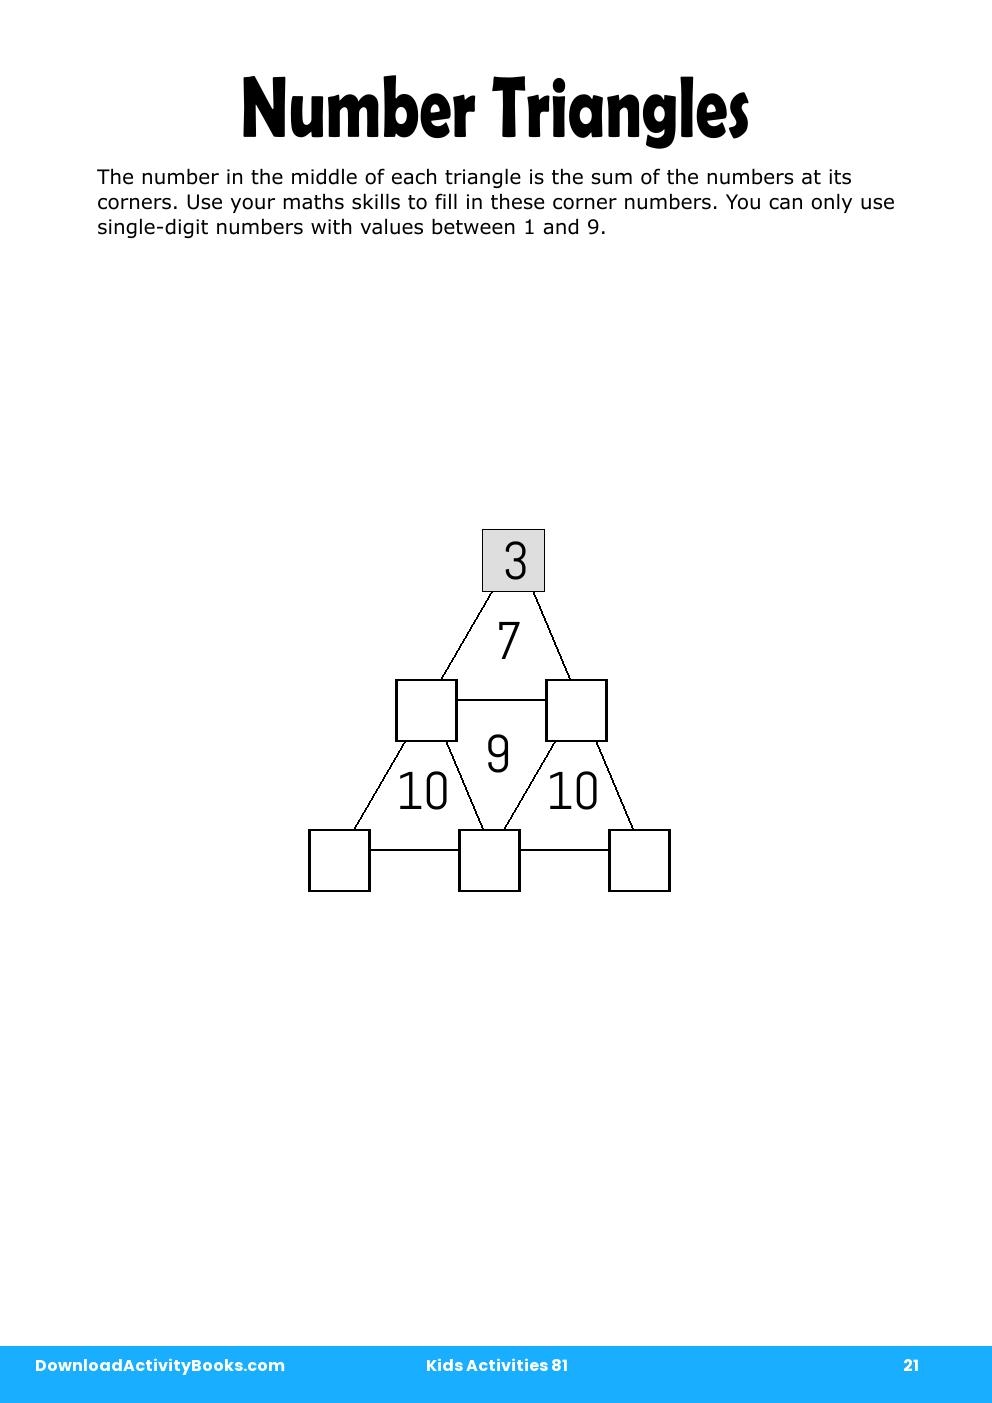 Number Triangles in Kids Activities 81